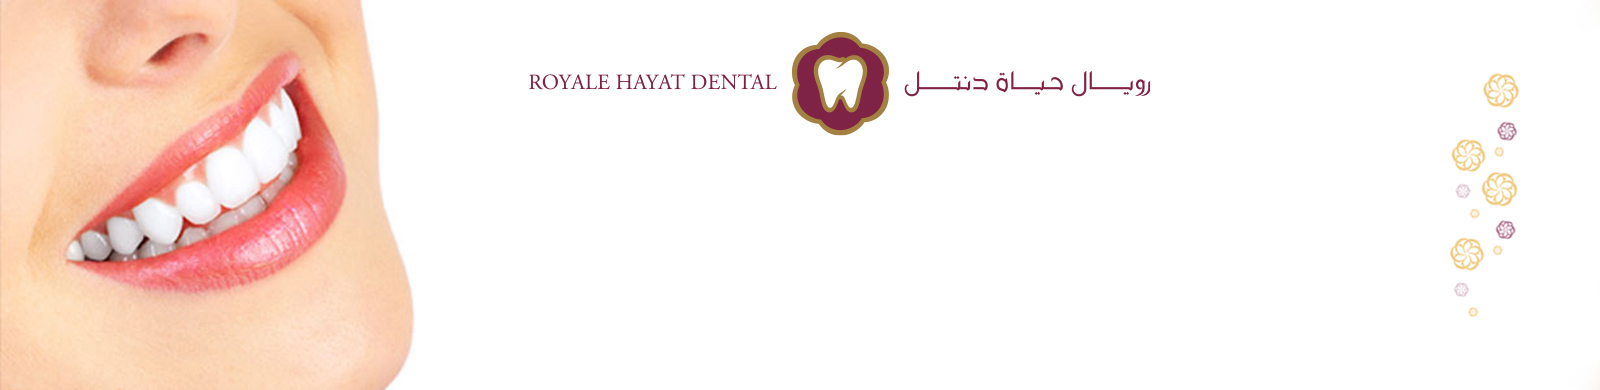 Royale Hayat Dental